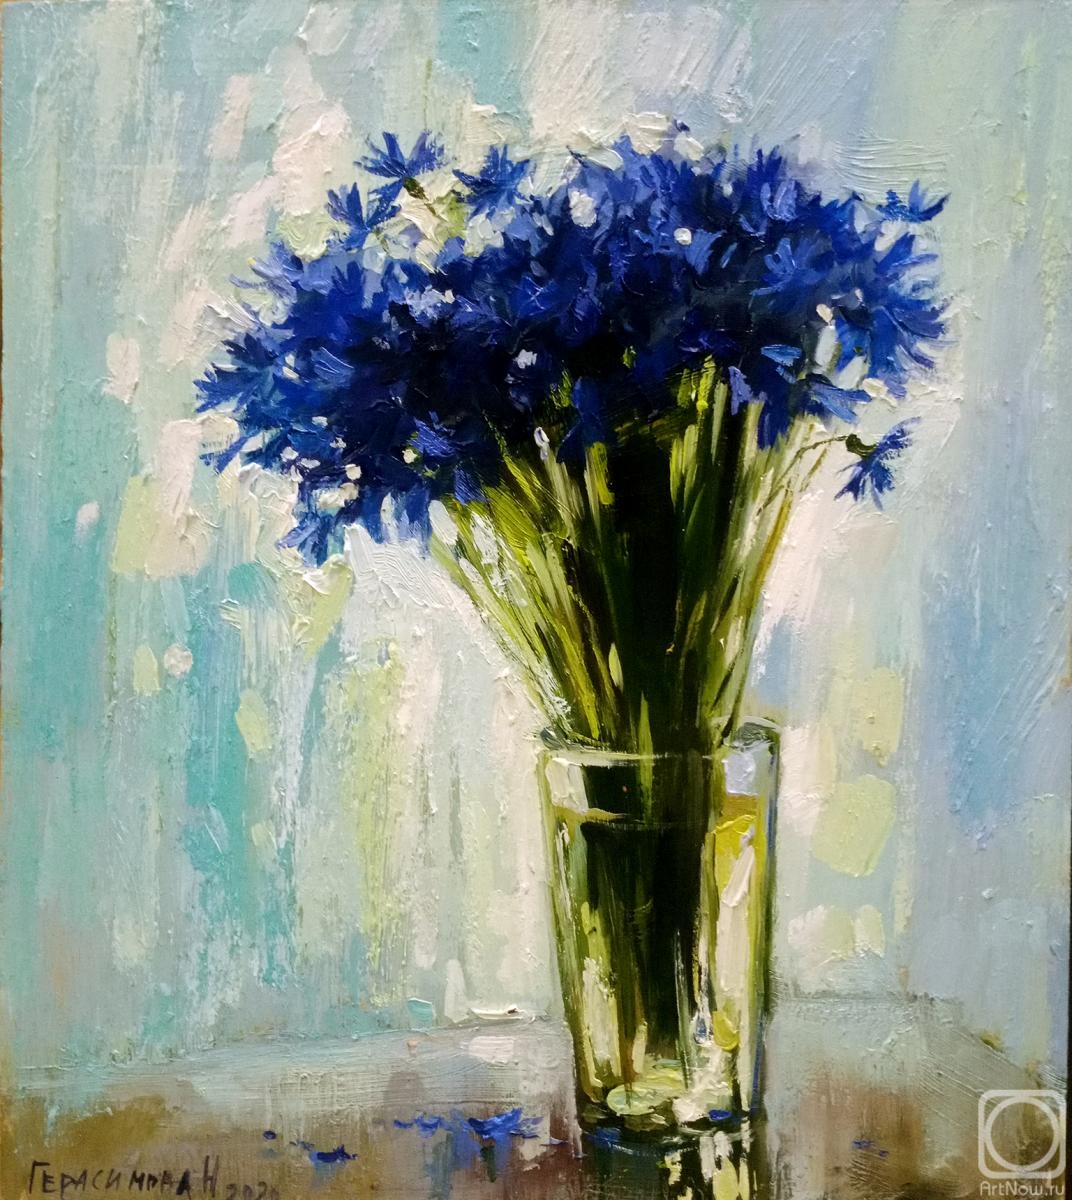 Gerasimova Natalia. Blue bouquet